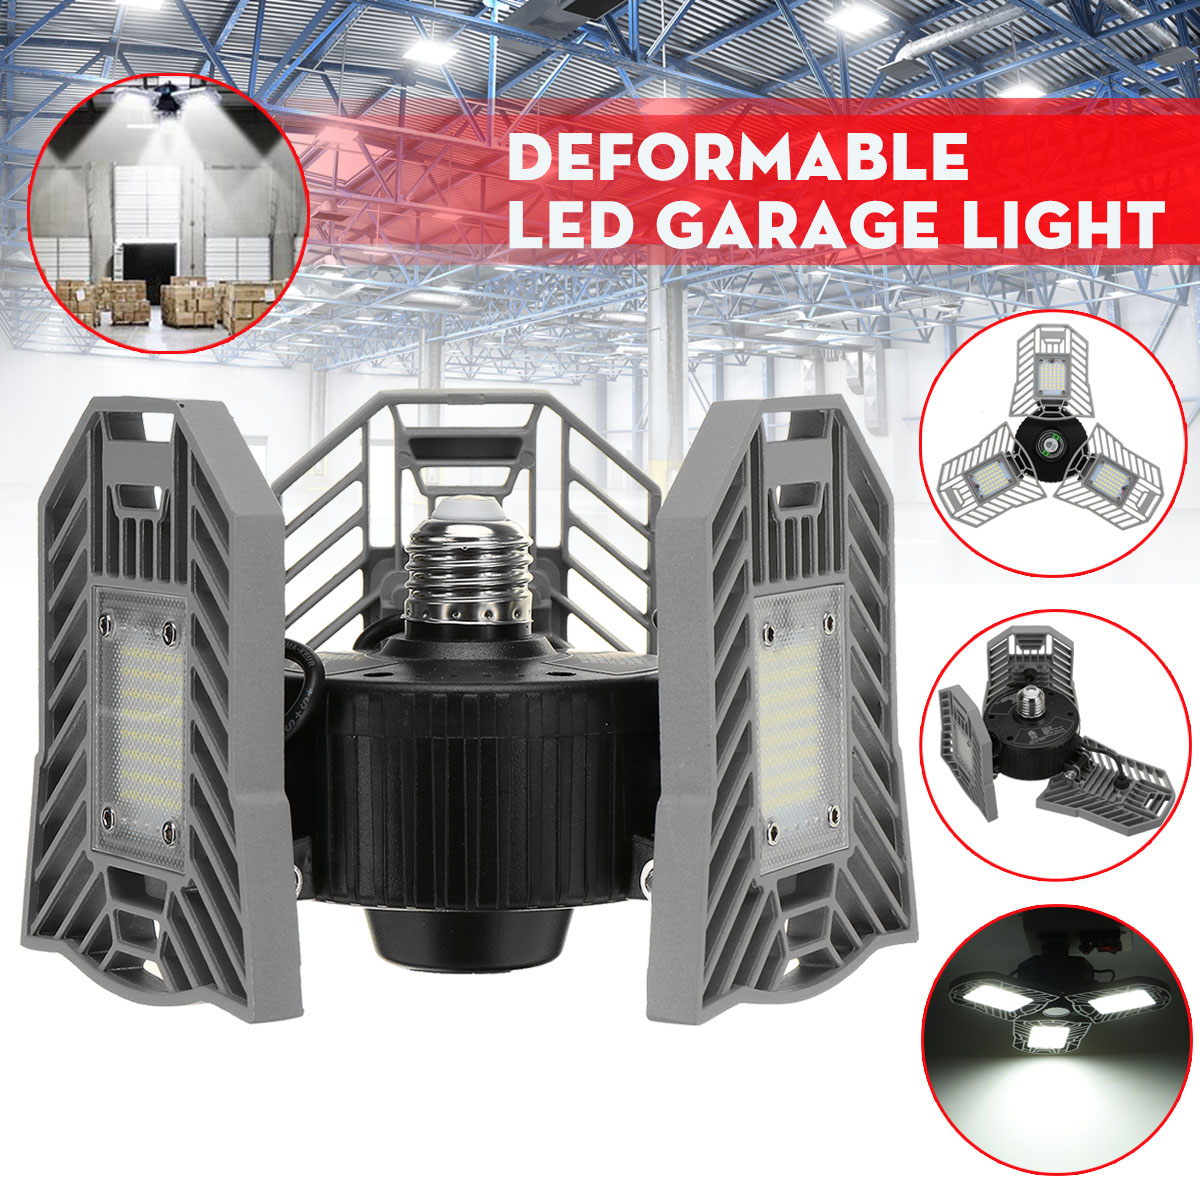 60W-85-265V-Deformable-LED-Garage-Light-Super-Bright-Ceiling-Lamp-E27-Base-1730018-1